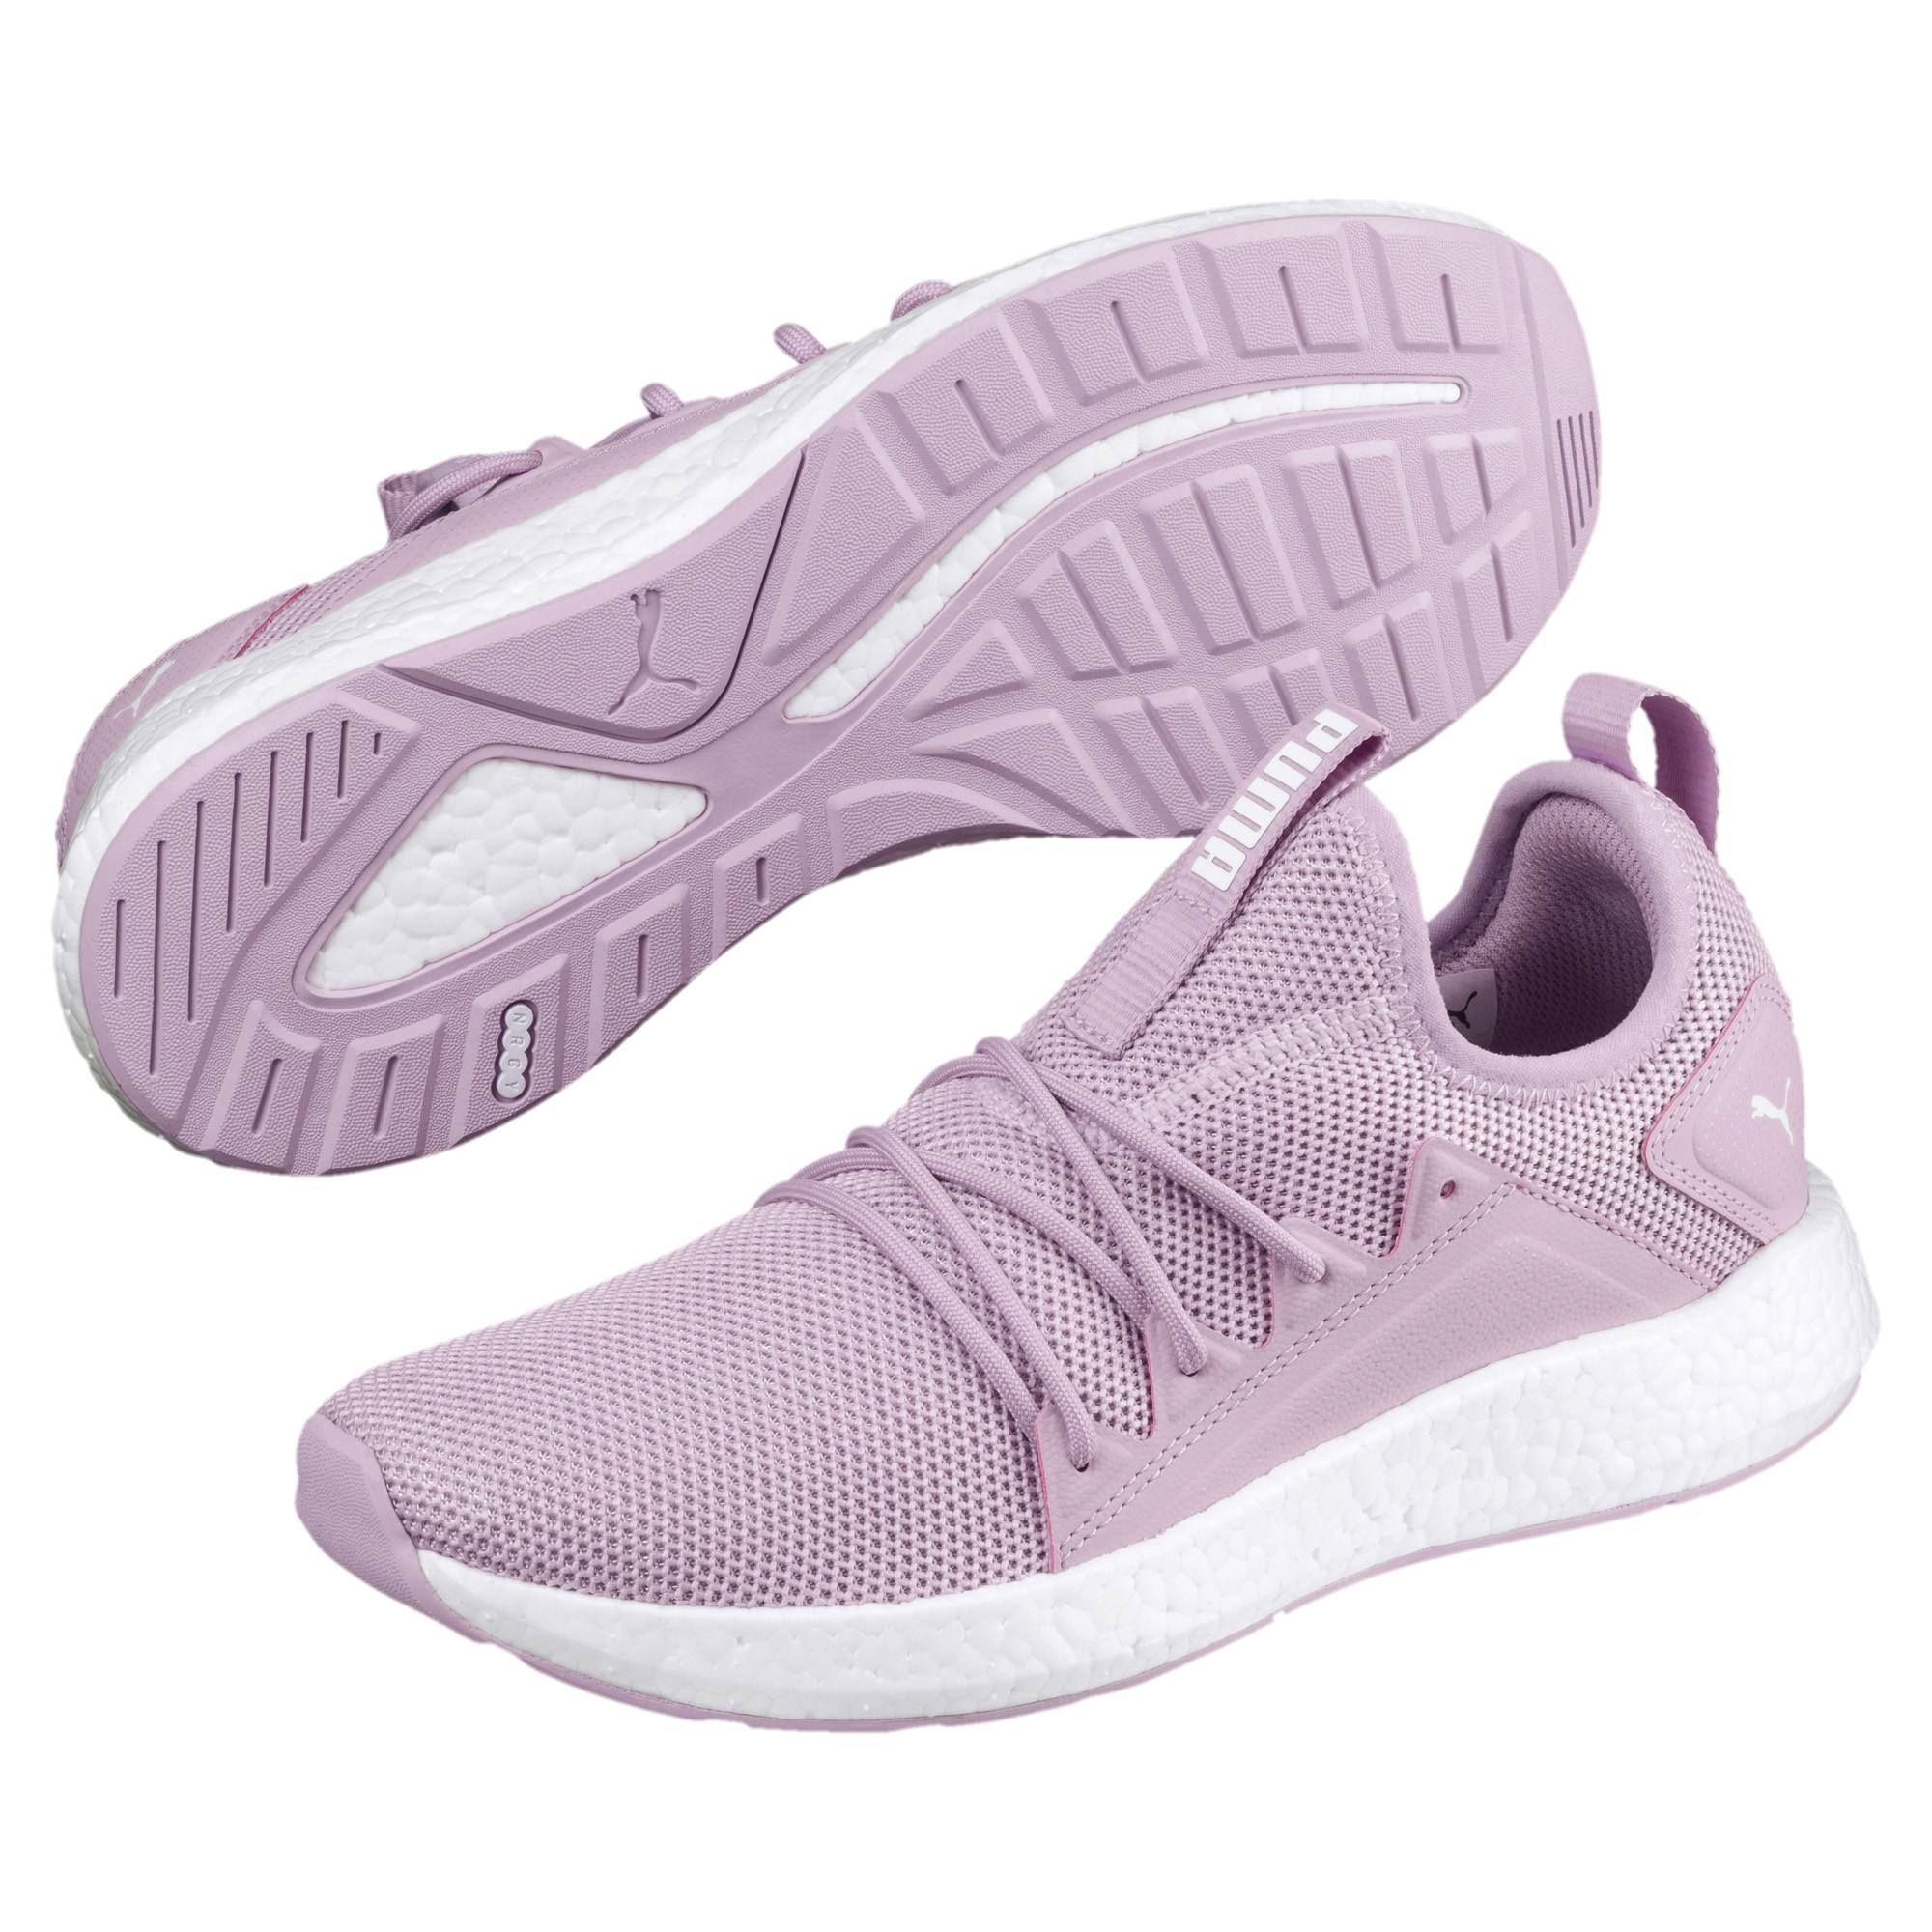 PUMA Nrgy Neko Women's Running Shoes in 03 (Purple) | Lyst